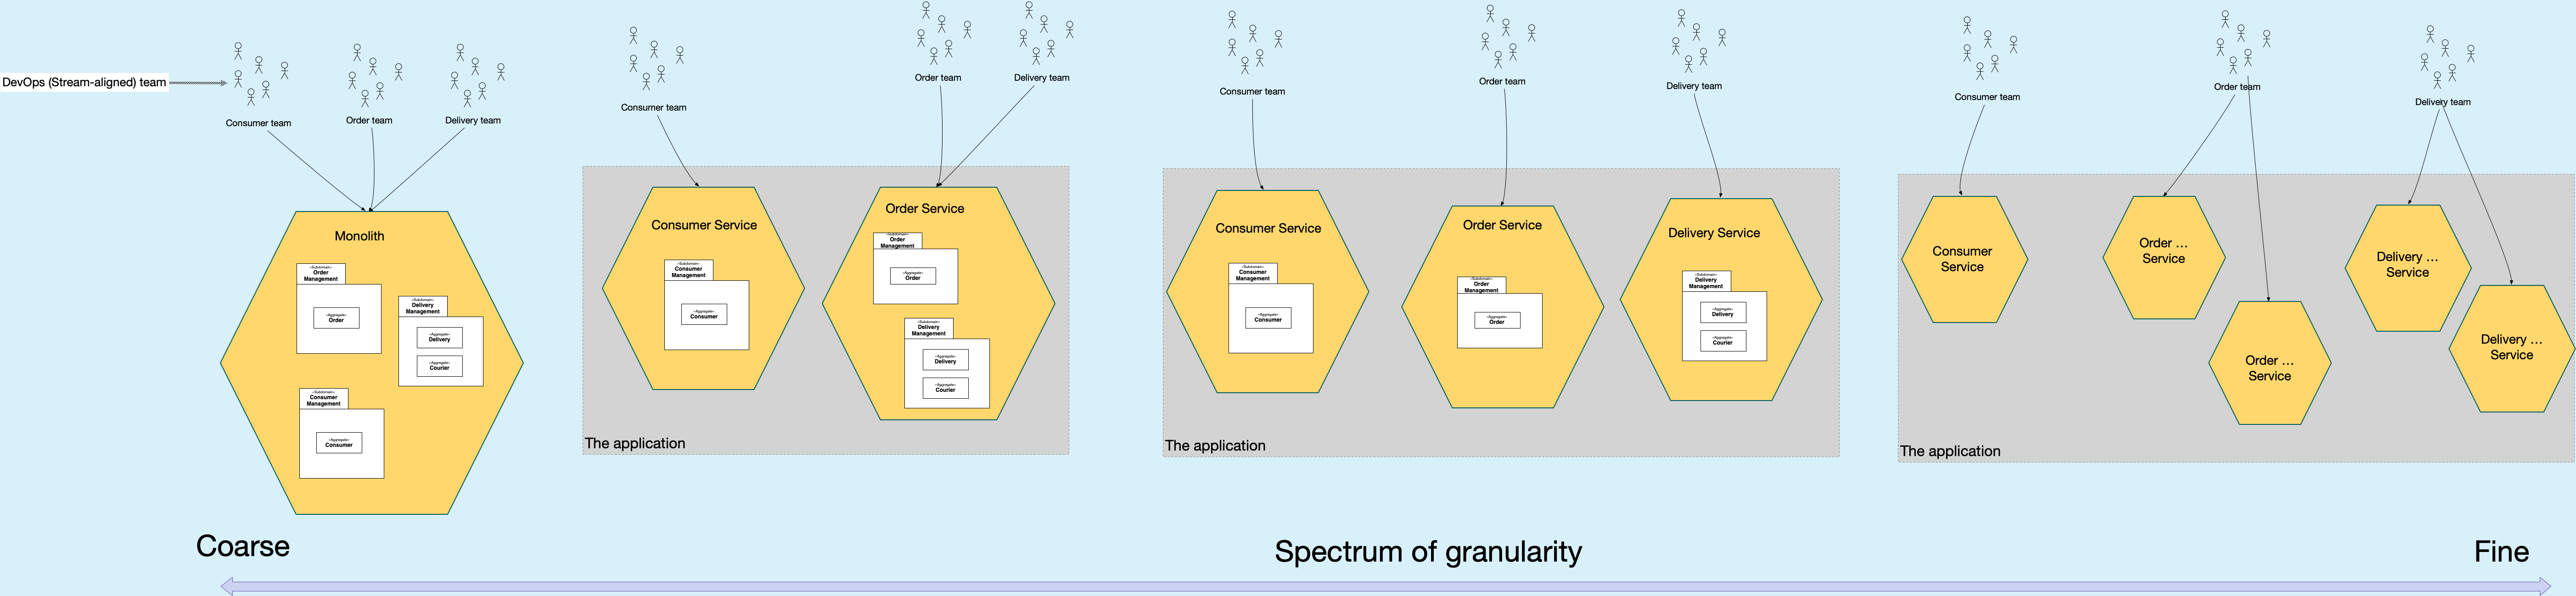 spectrum-of-granularity image